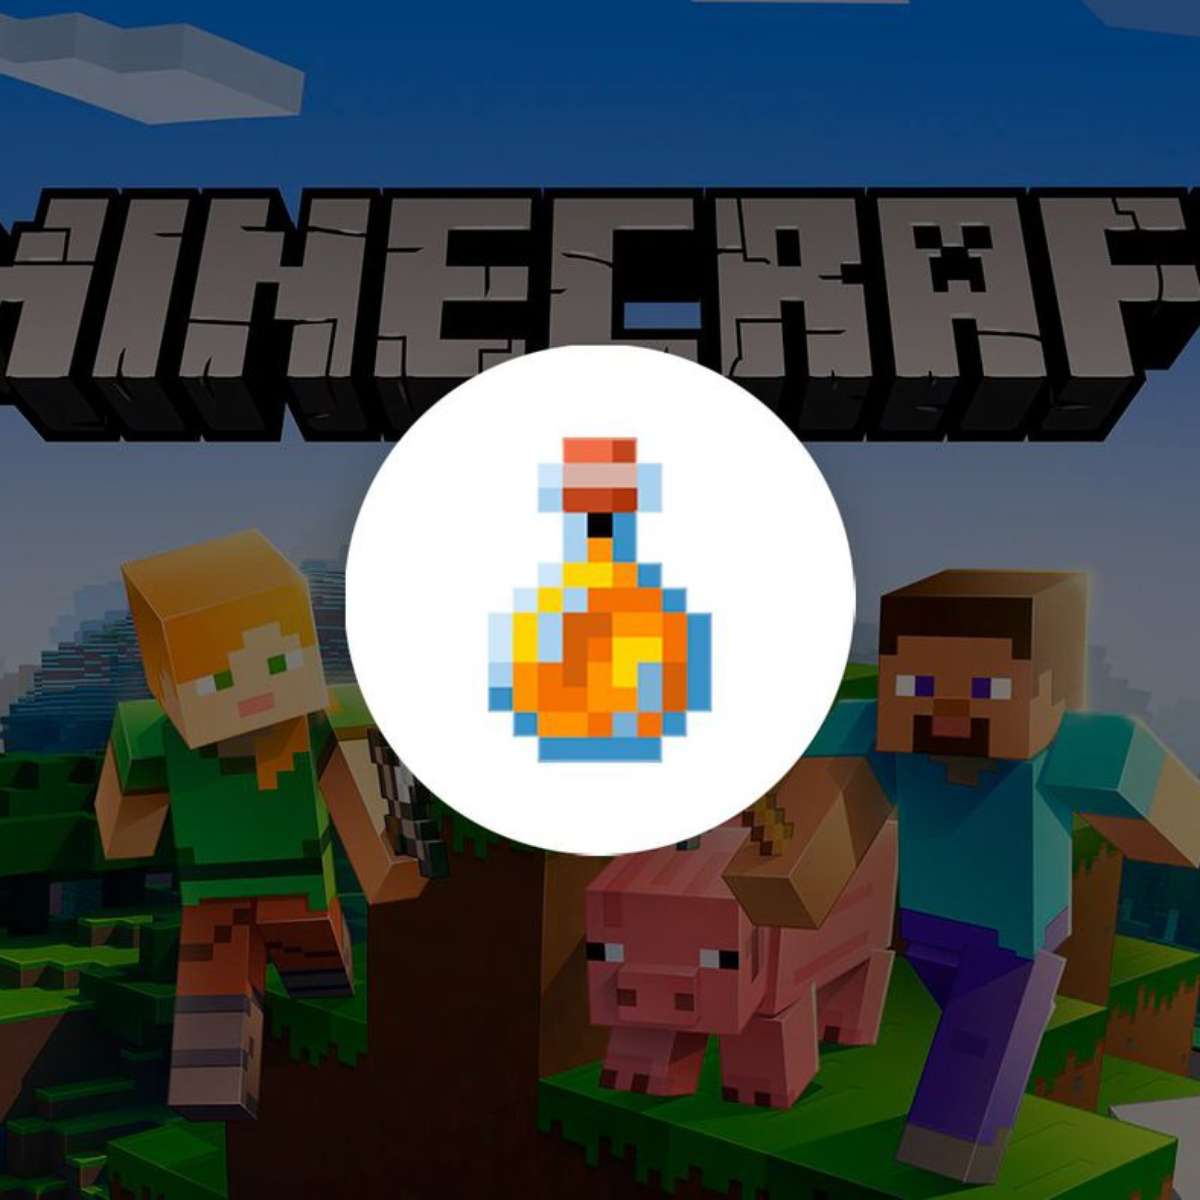 Como fazer vidro no Minecraft - Canaltech